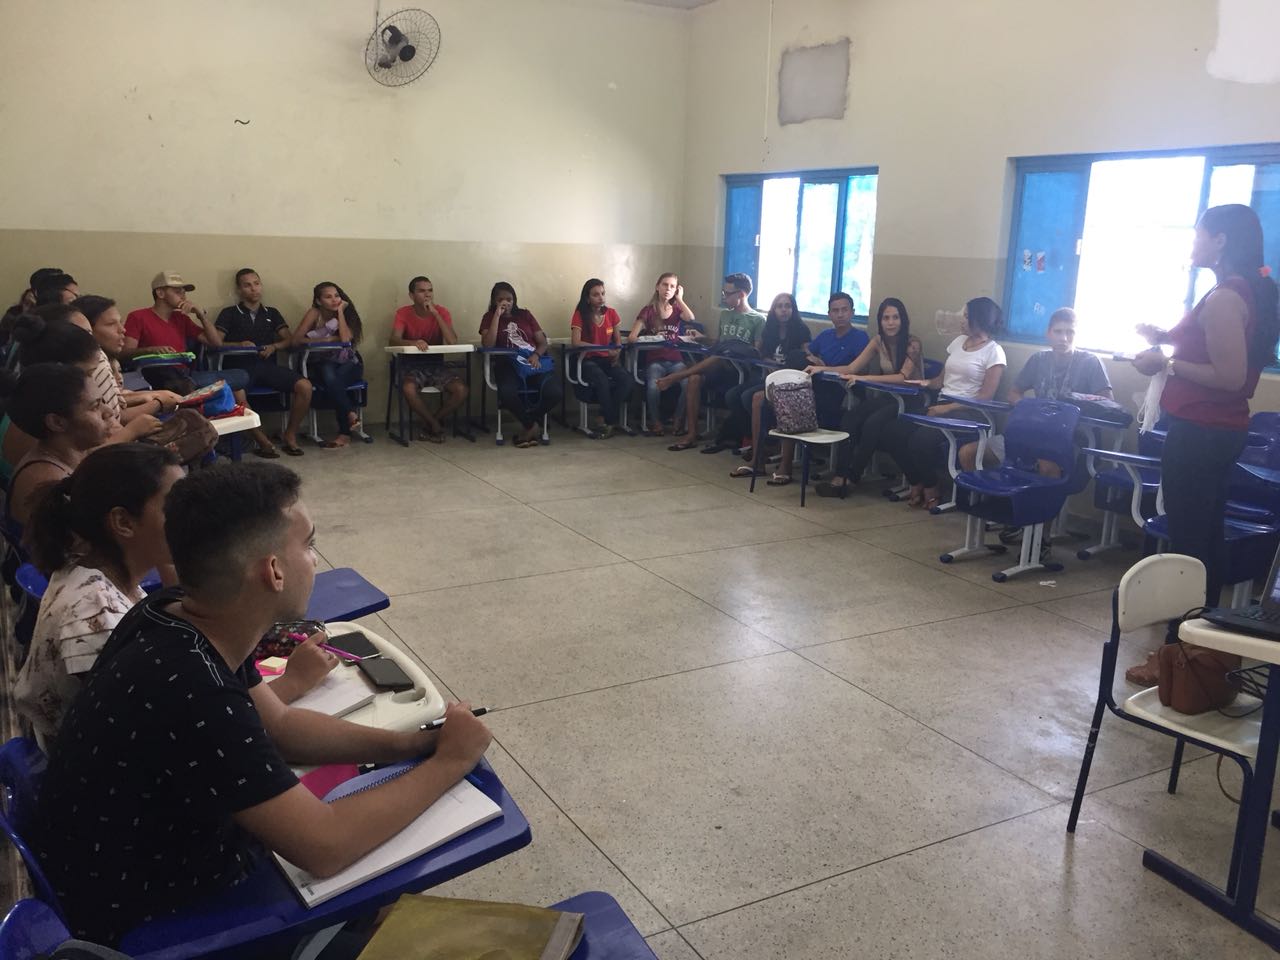 Fundação da Juventude de Porto Nacional e Sebrae realizam curso sobre empreendedorismo em escolas